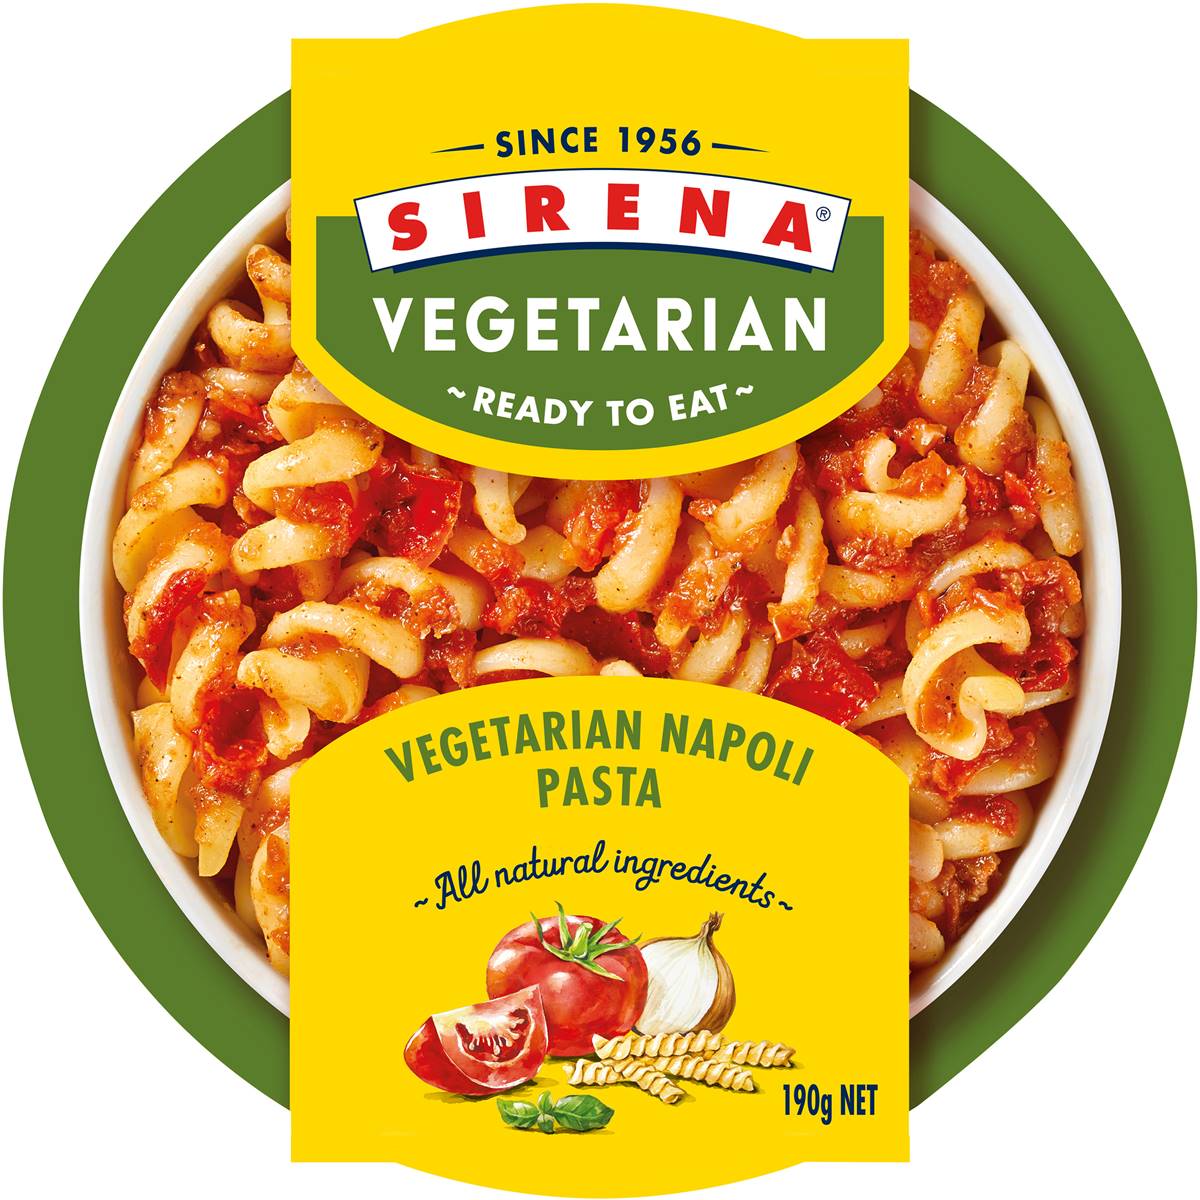 Sirena Vegetarian Ready To Eat Napoli Pasta 190g